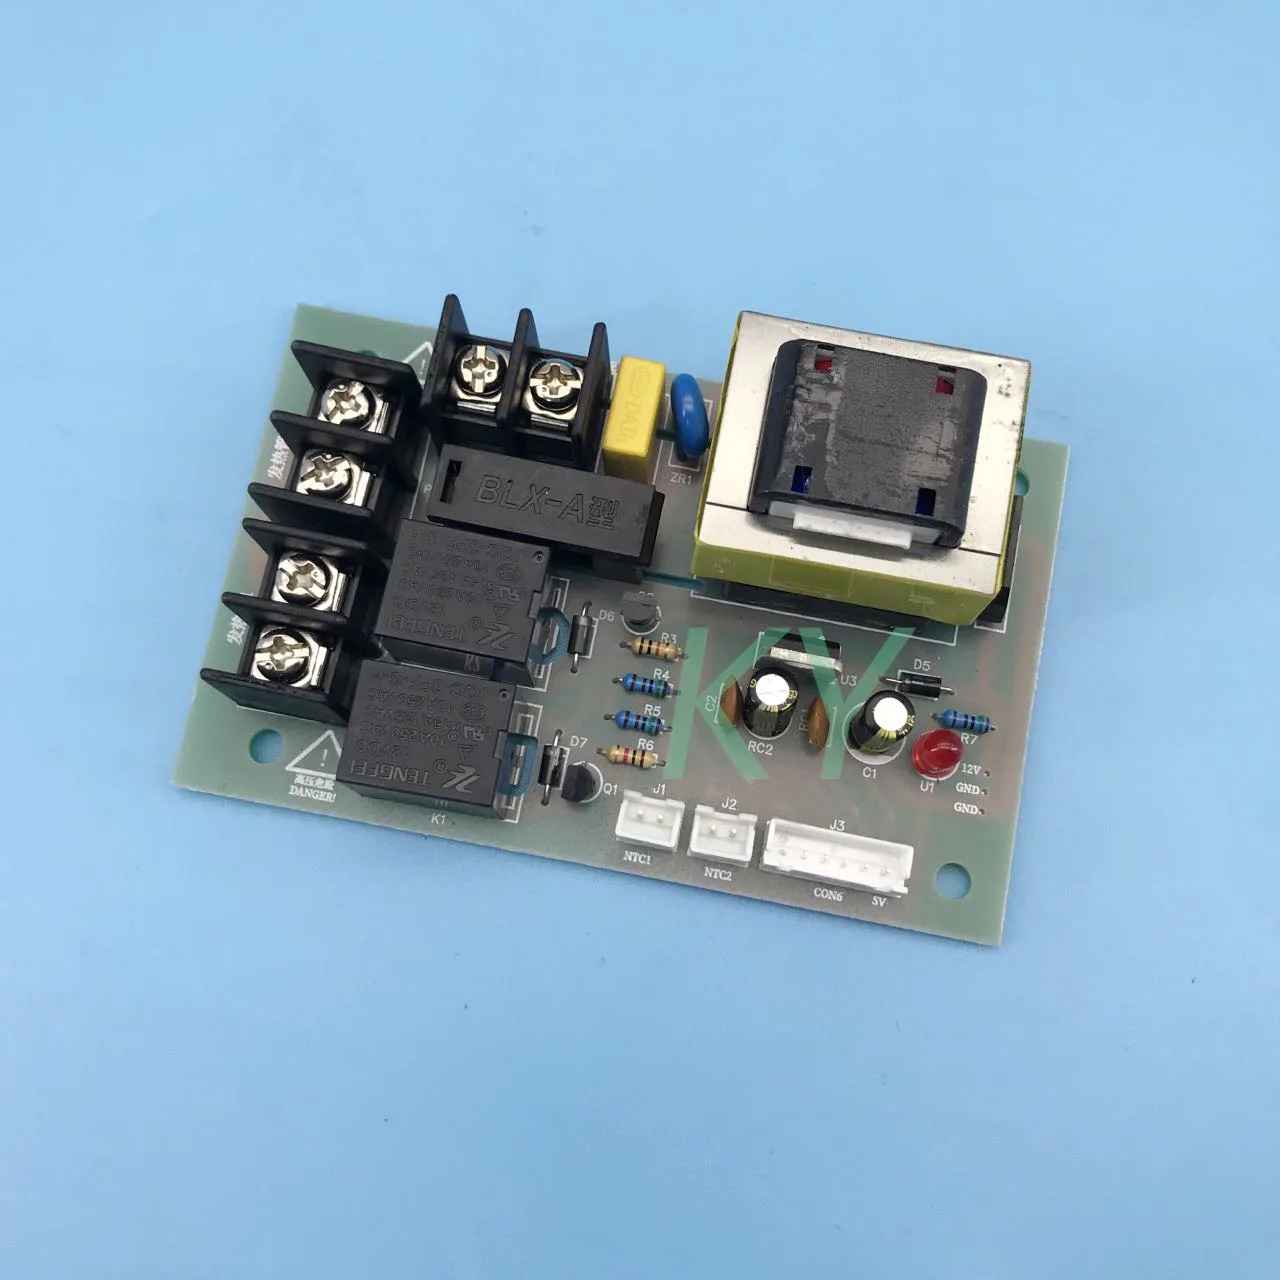 1pc temperature control board temperature sensor for tucai machine Tucai printer